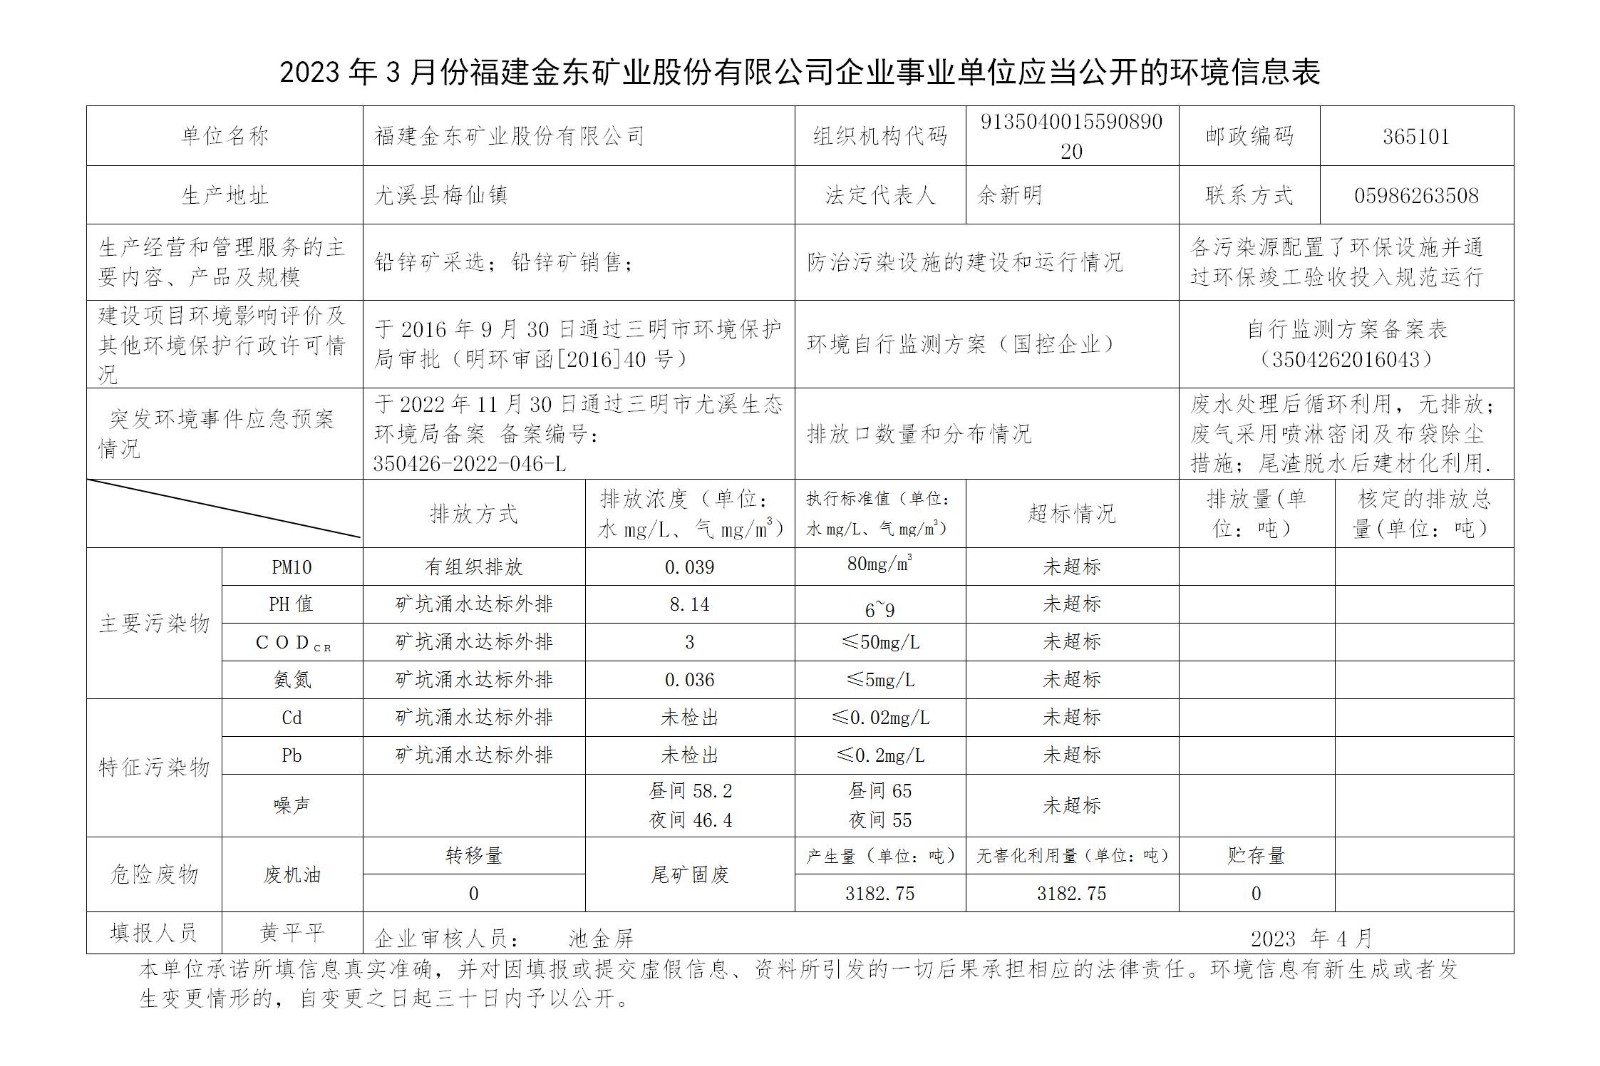 2023年3月份网络买球企业事业单位应当公开的环境信息表_01.jpg